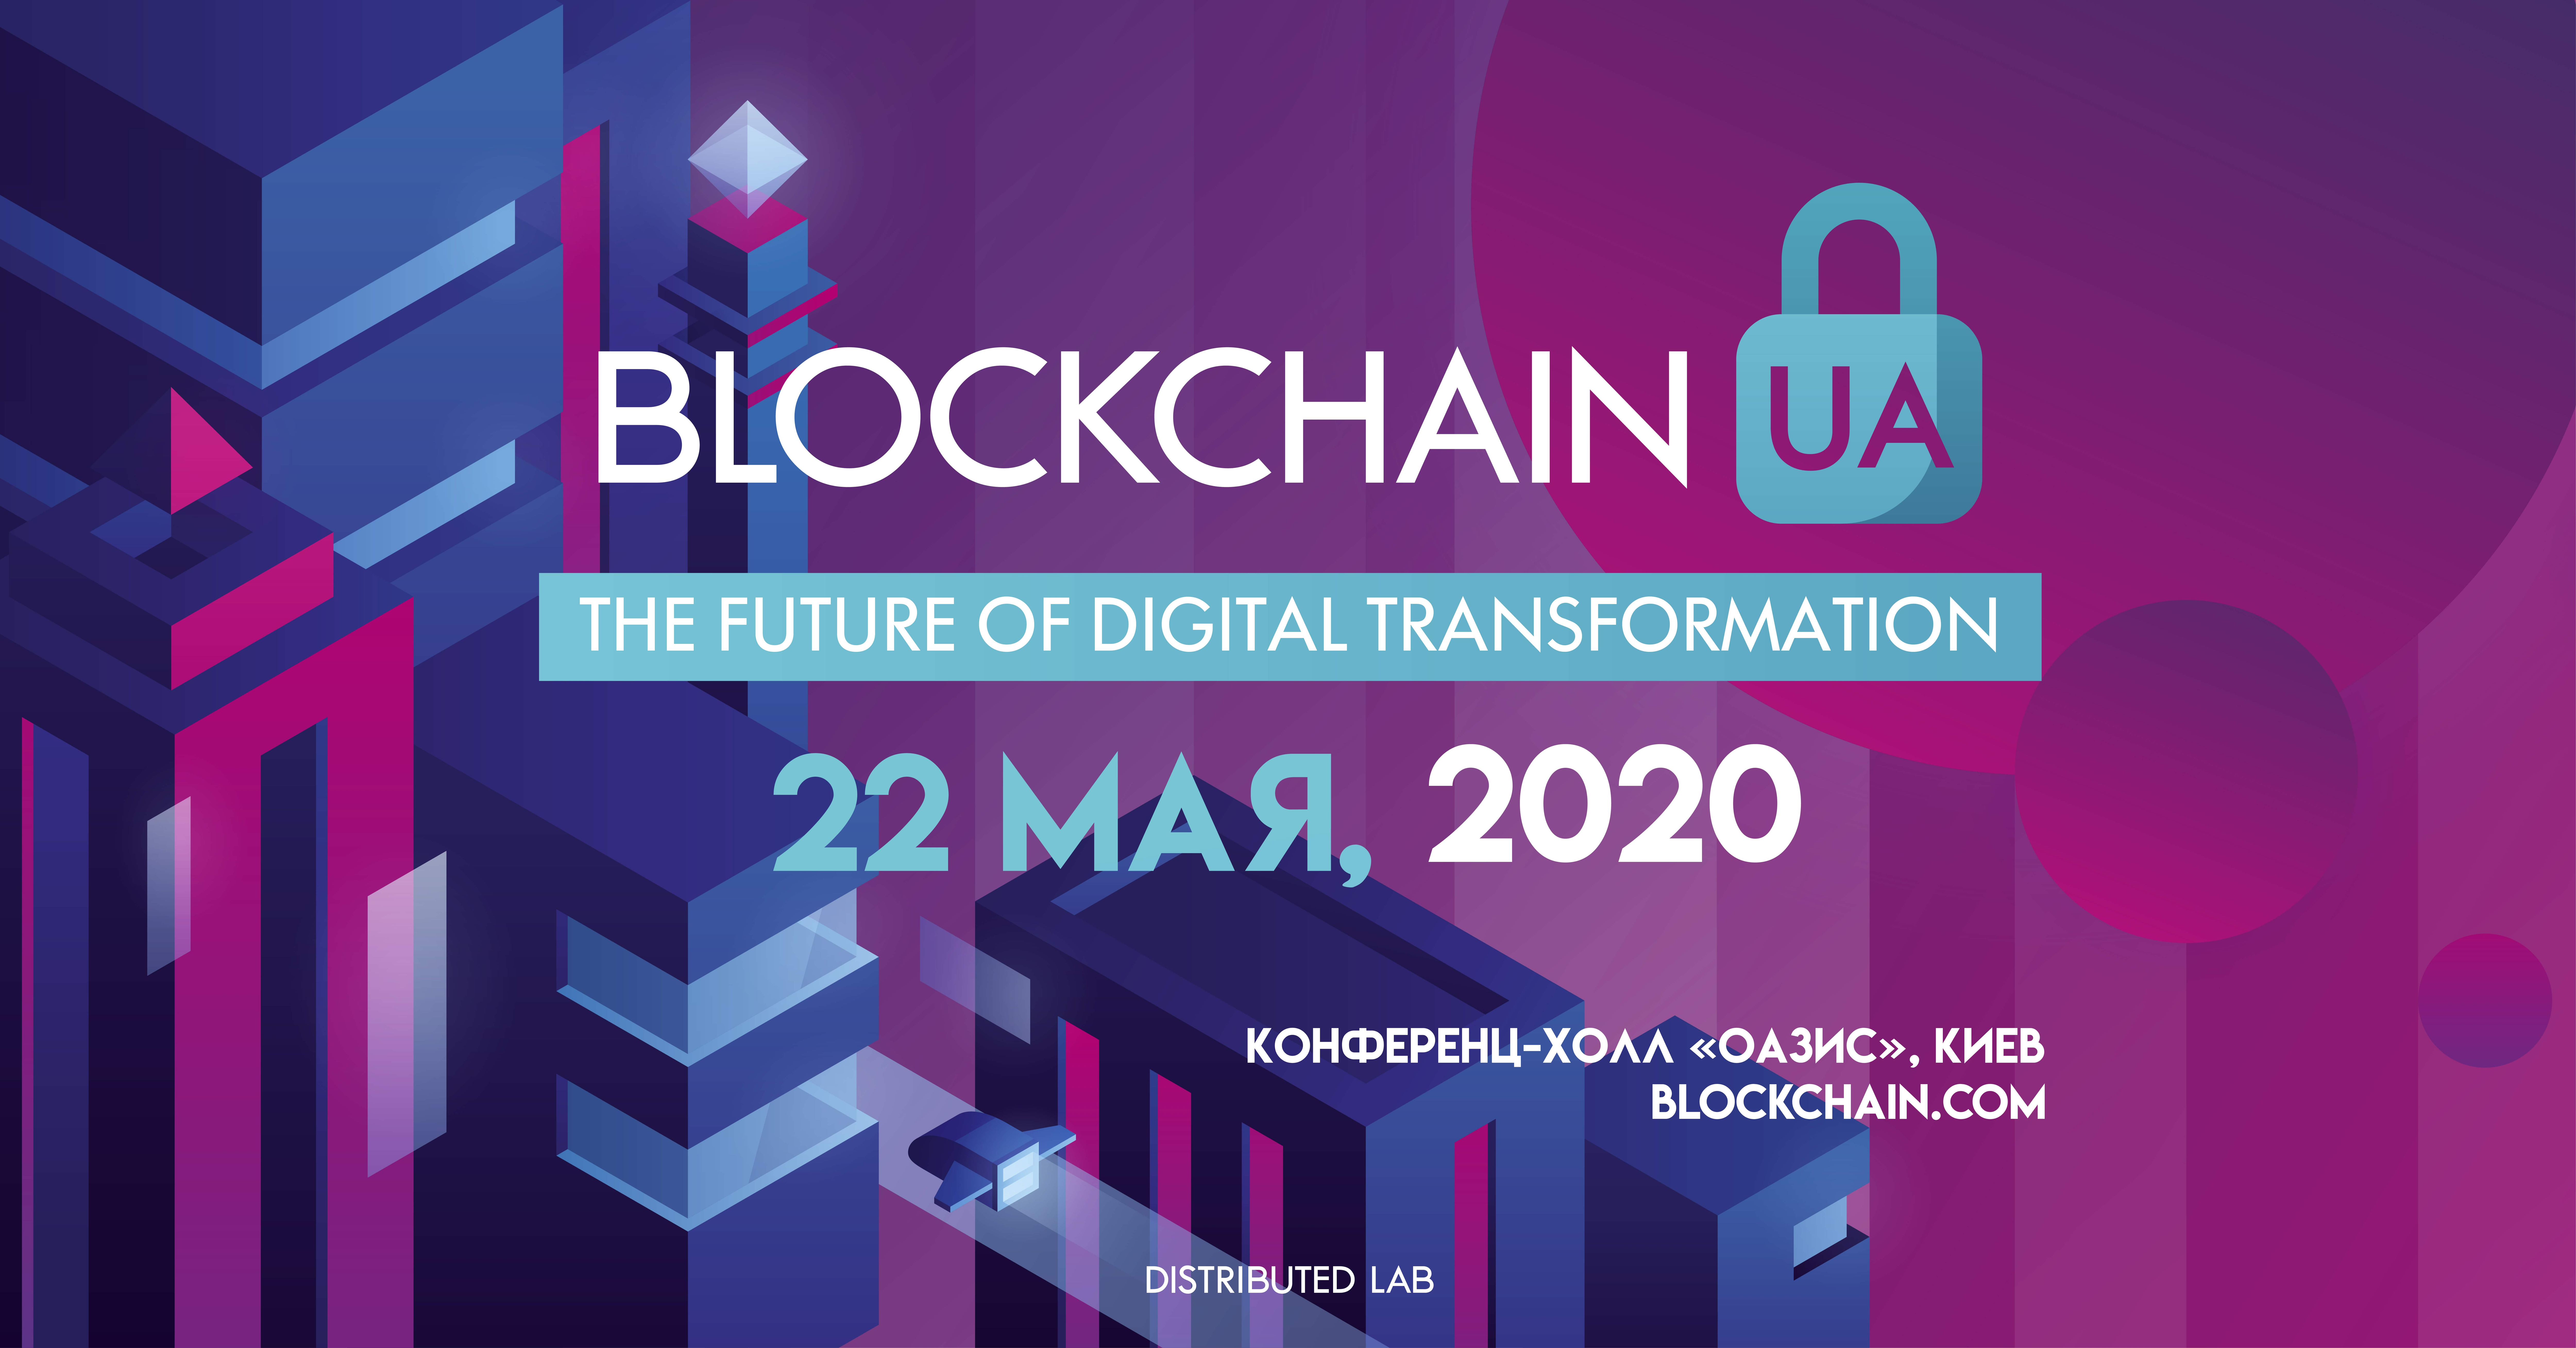 Конференция BlockchainUA переносится на 22 мая. Заглавный коллаж новости.